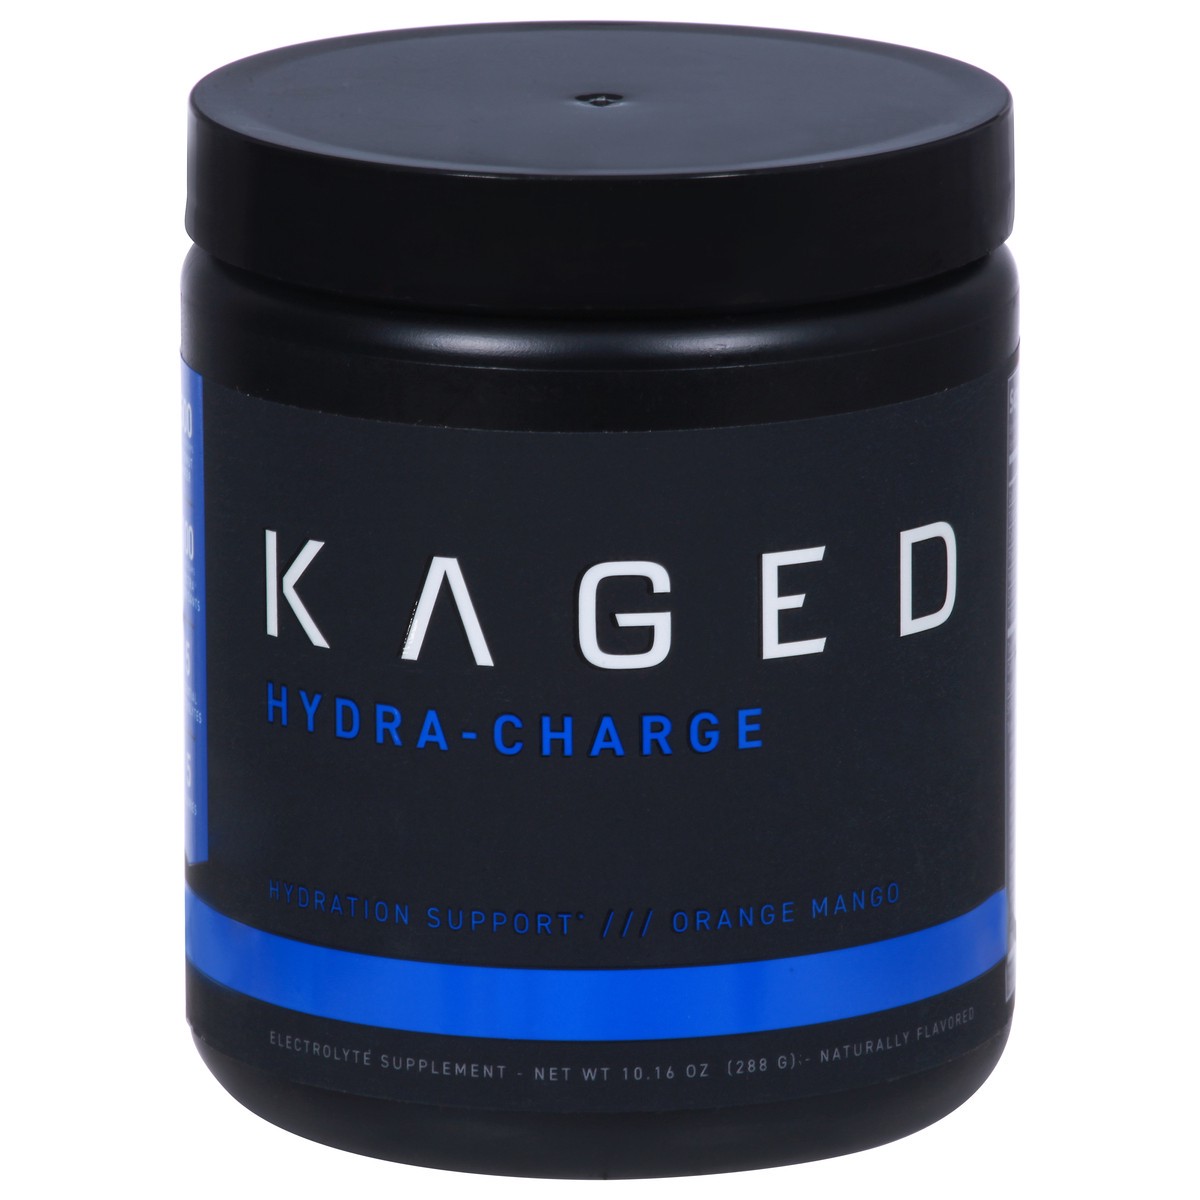 slide 1 of 9, Kaged Hydra-Charge Orange Mango Hydration Support 10.16 oz, 9.73 oz